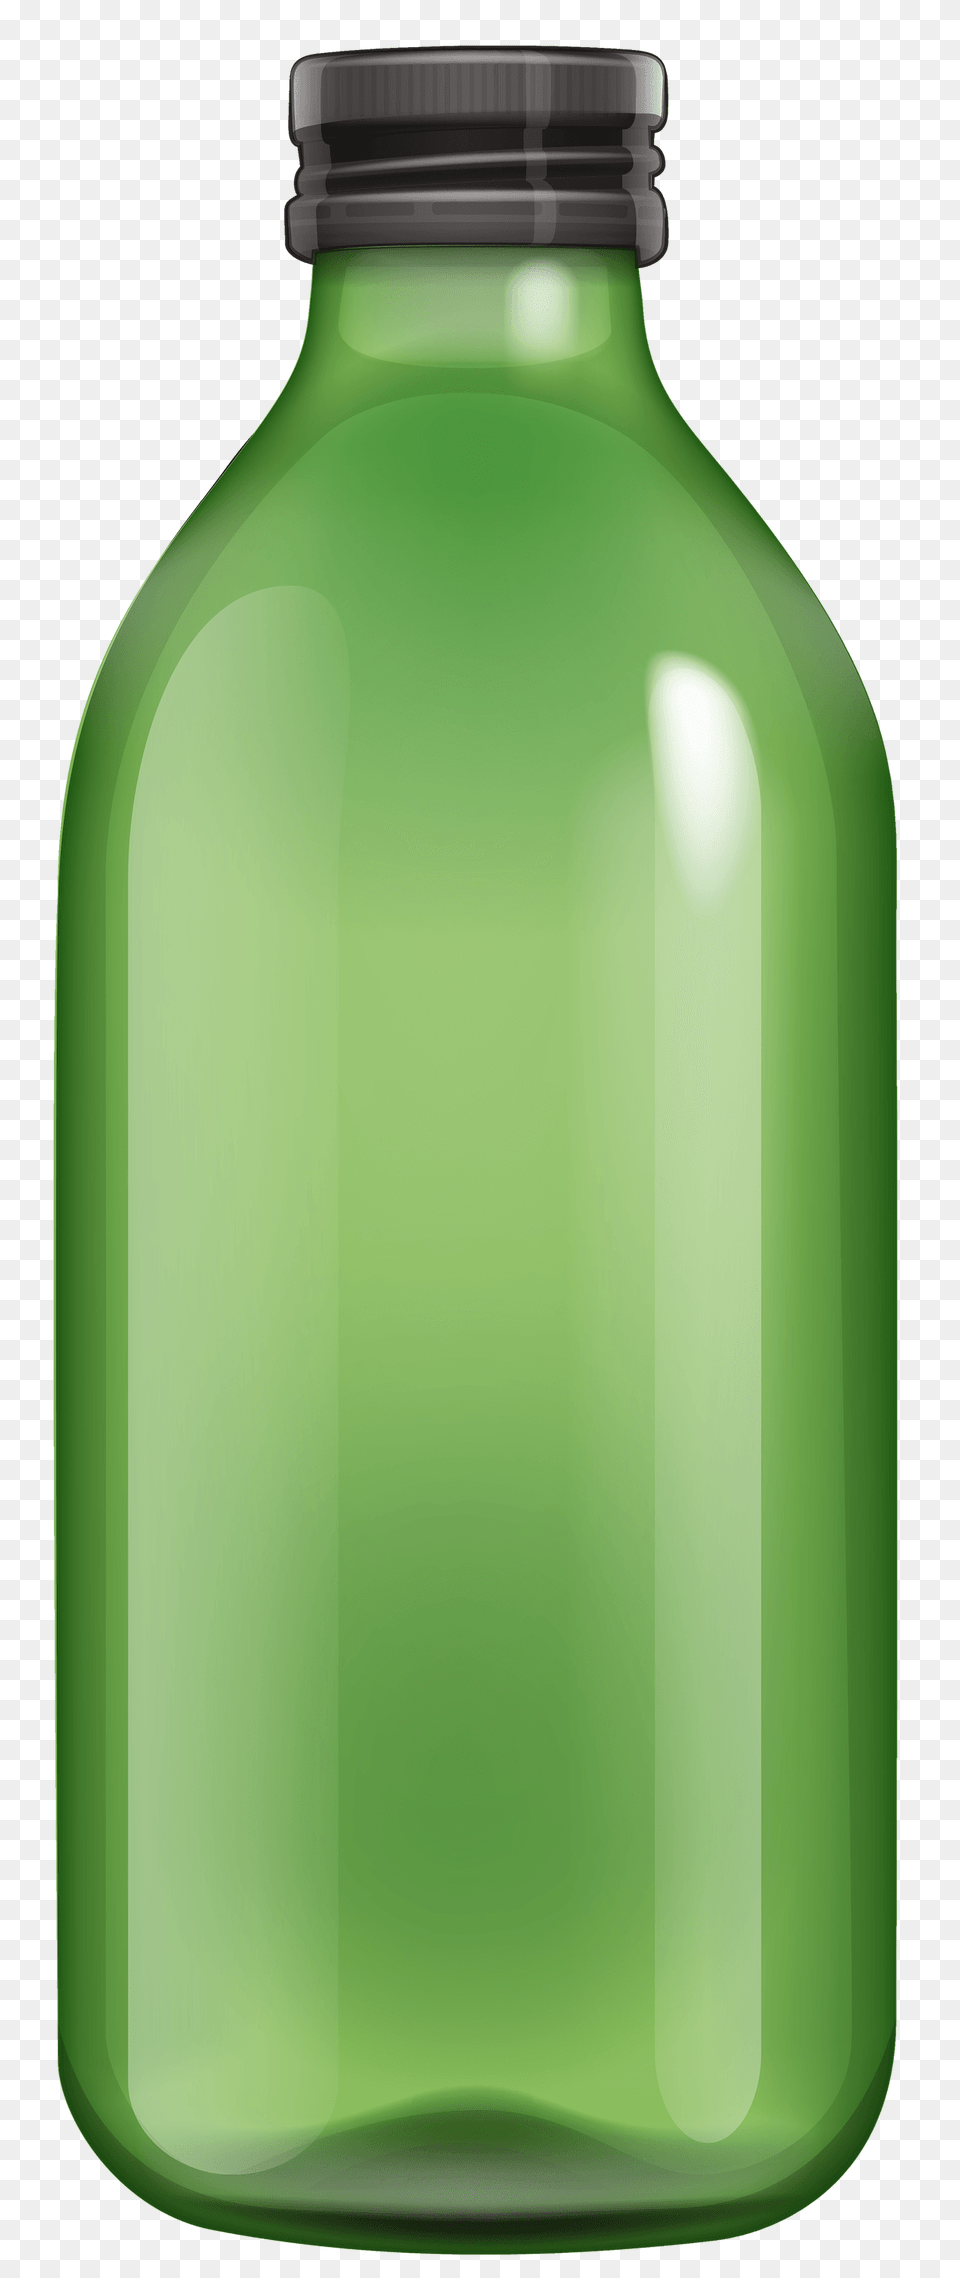 Bottle Transparent, Green, Beverage, Juice, Milk Free Png Download